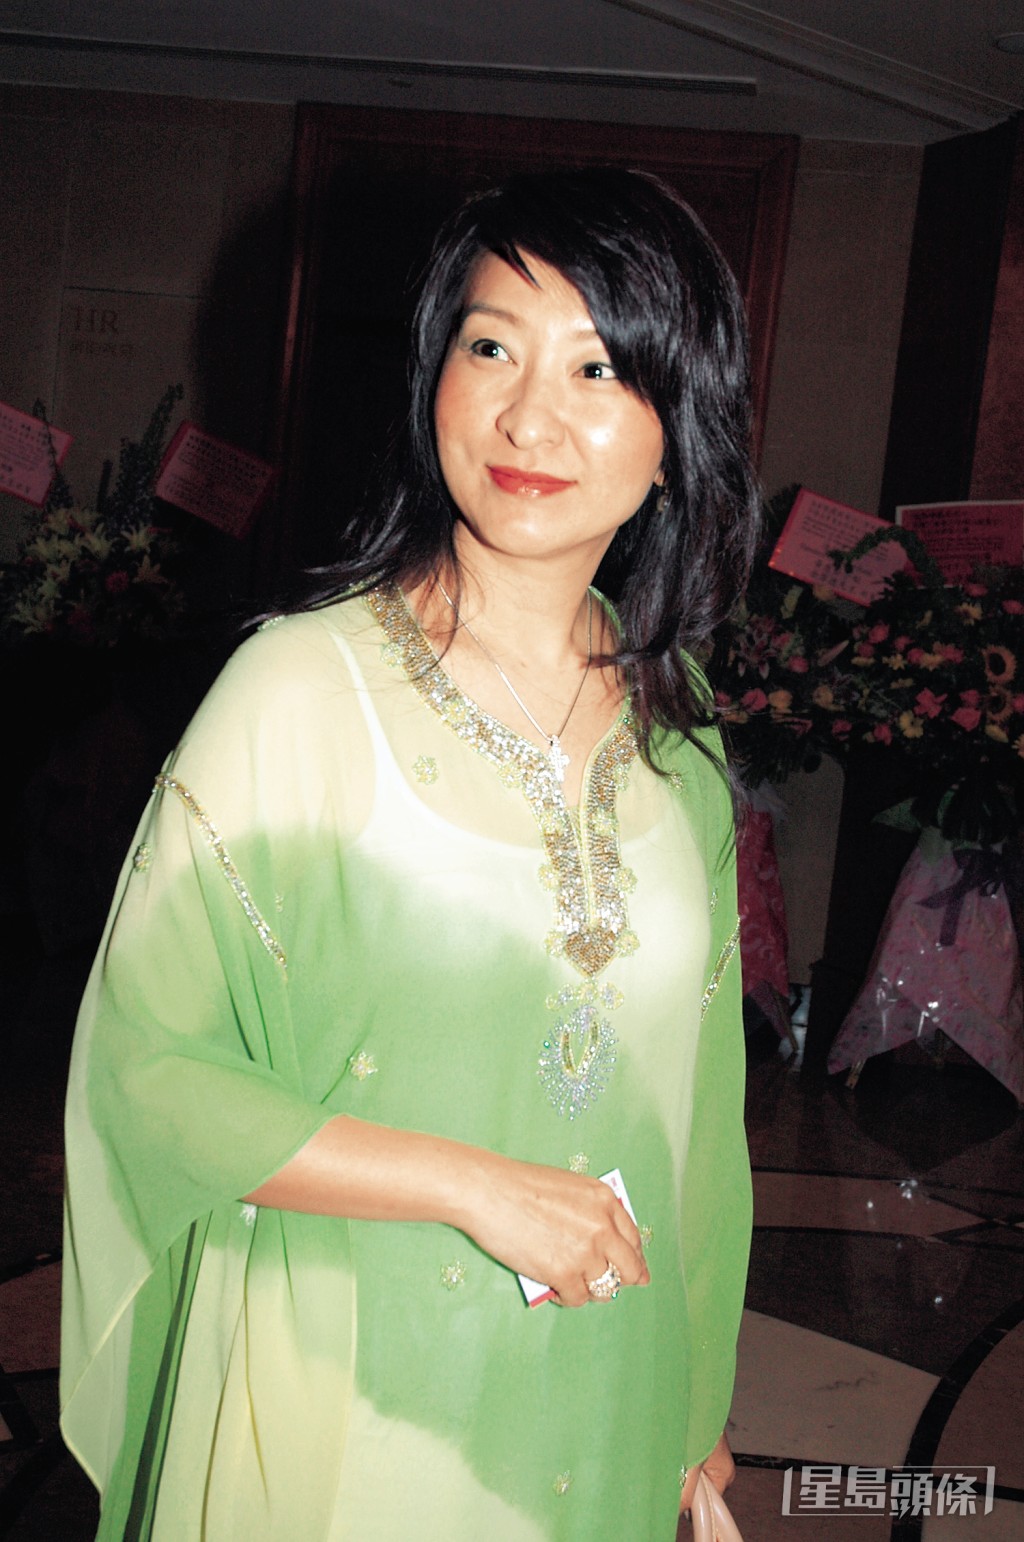 蒋丽萍是震雄集团创办人蒋震的三女儿。